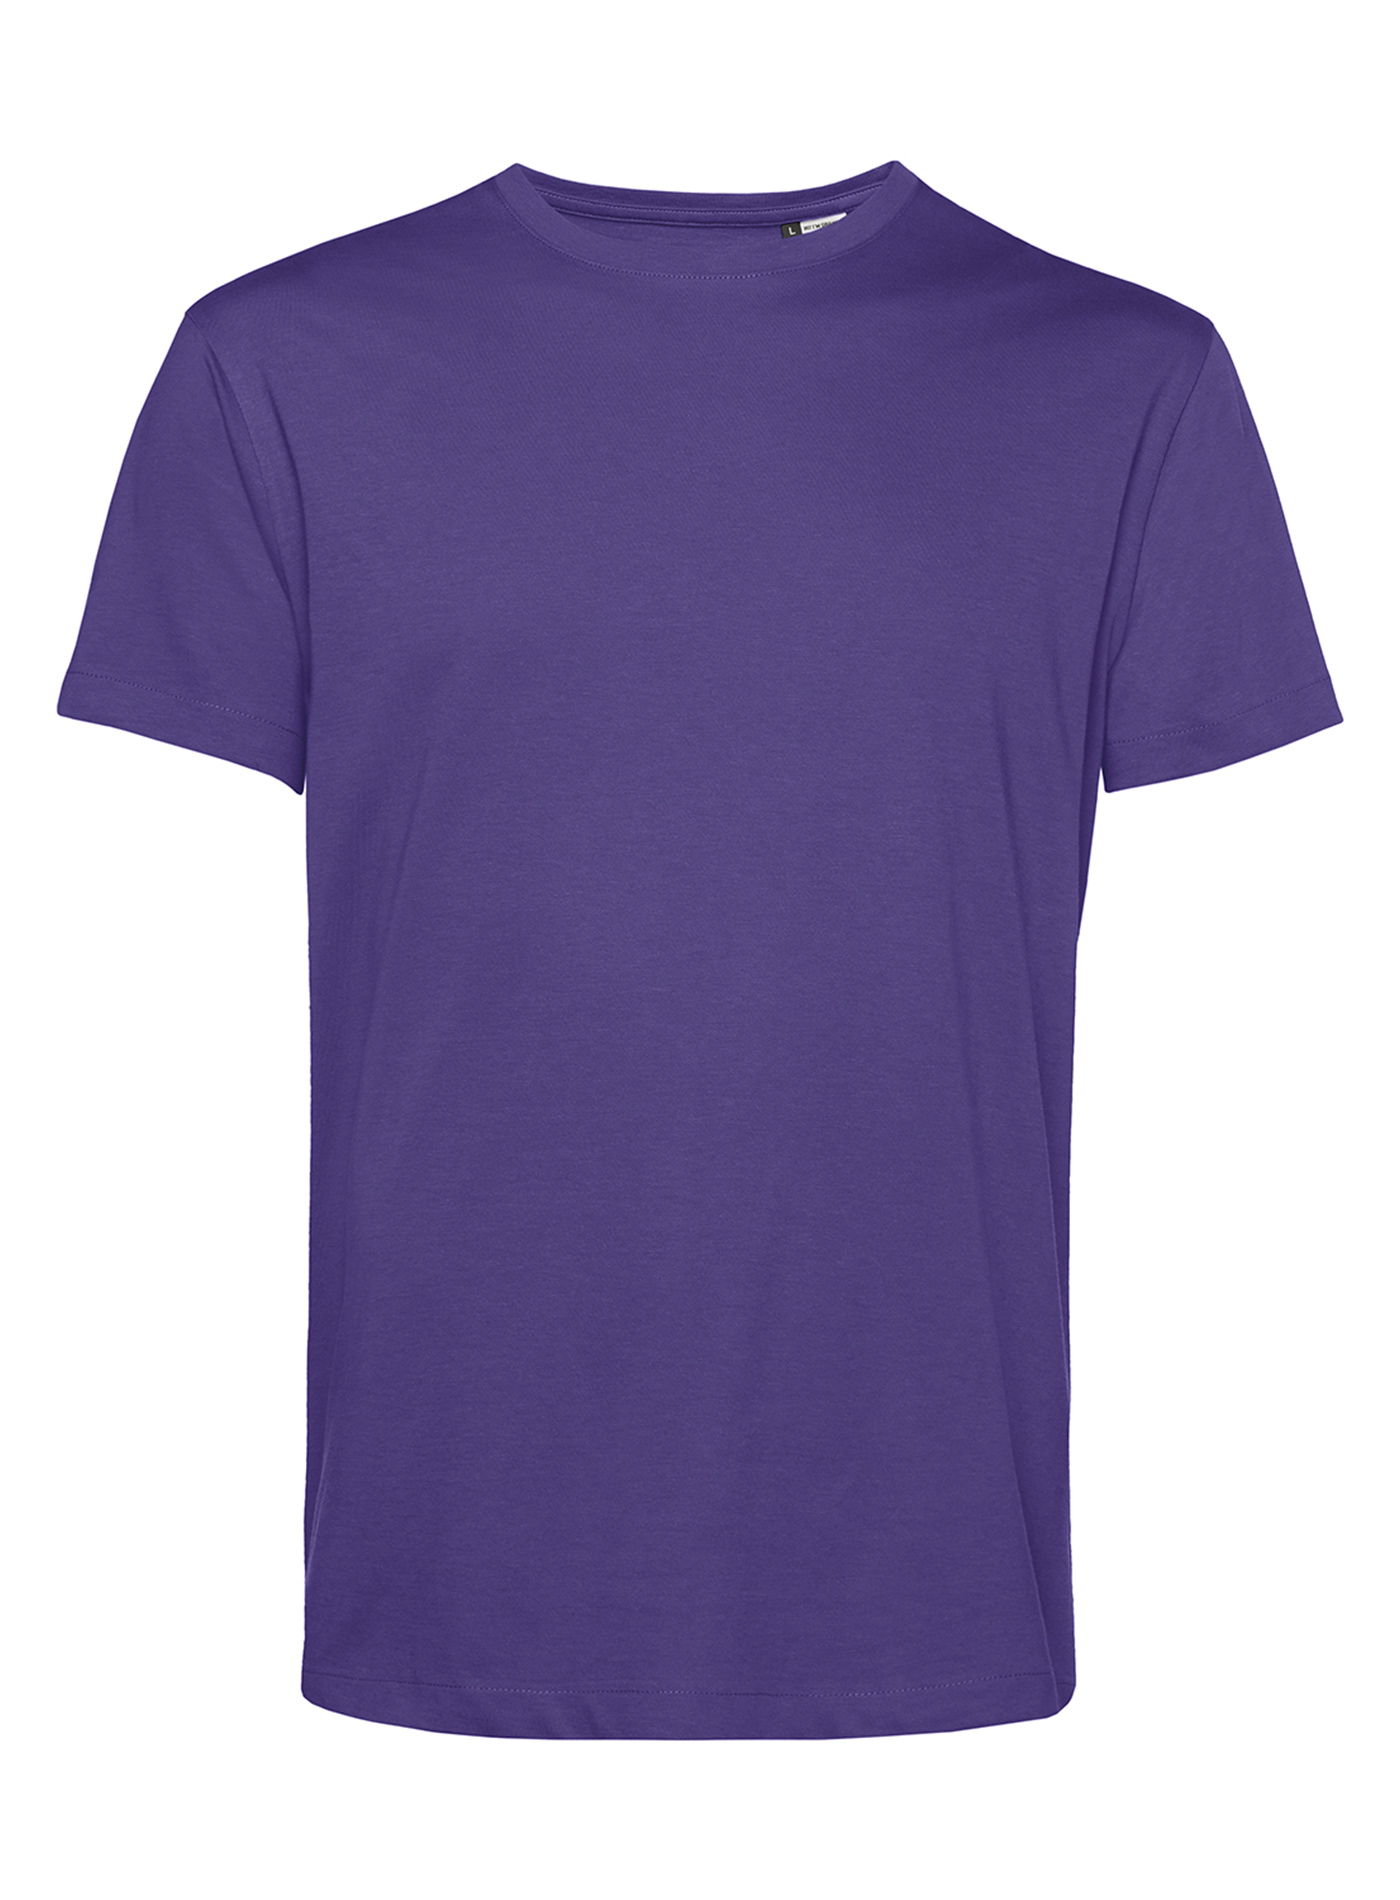 Pánské tričko B&C Collection Organic - Tmavě fialová S